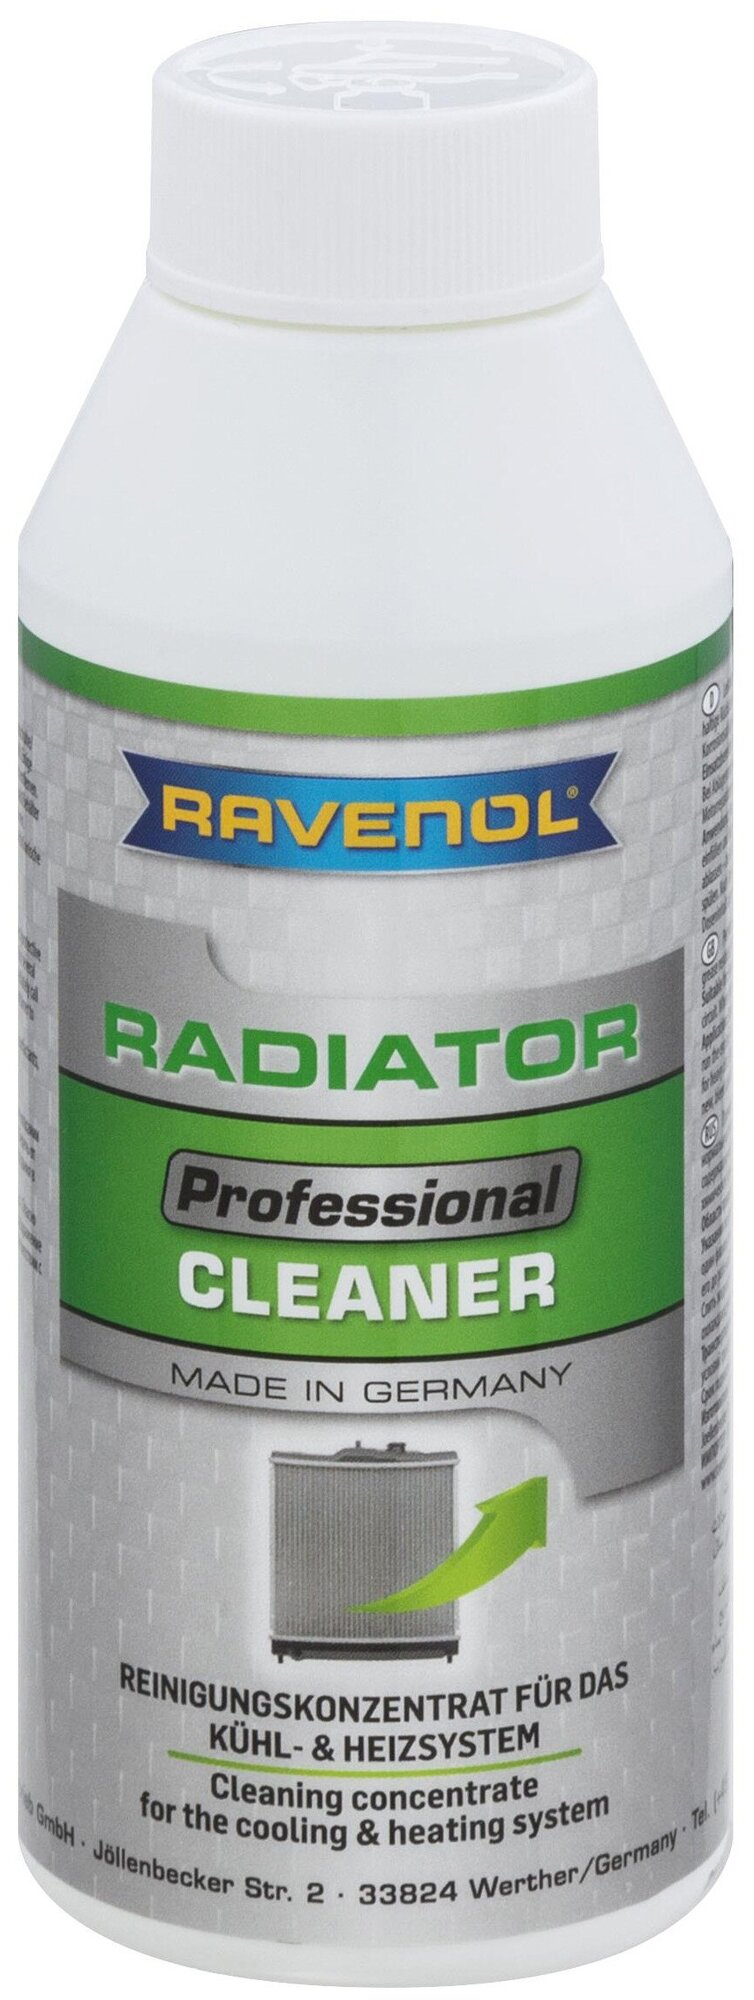 Очиститель радиатора RAVENOL Professional Radiator Cleaner (0,25 л)